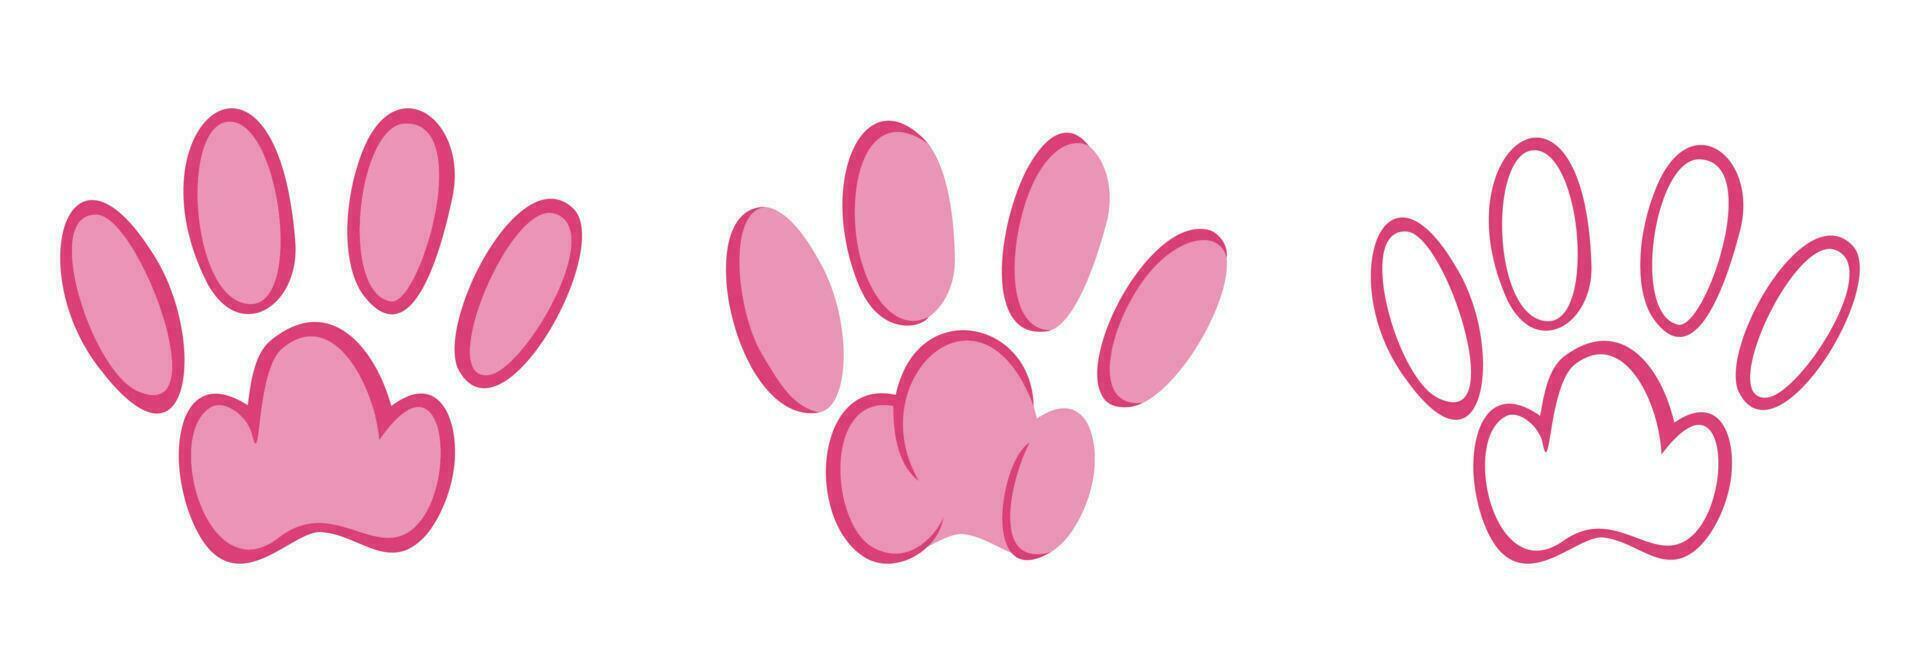 Rosa Tier Pfotenabdrücke. skizzieren Fußabdrücke von ein Kaninchen, Hase, Katze oder Hund. Vektor Illustration